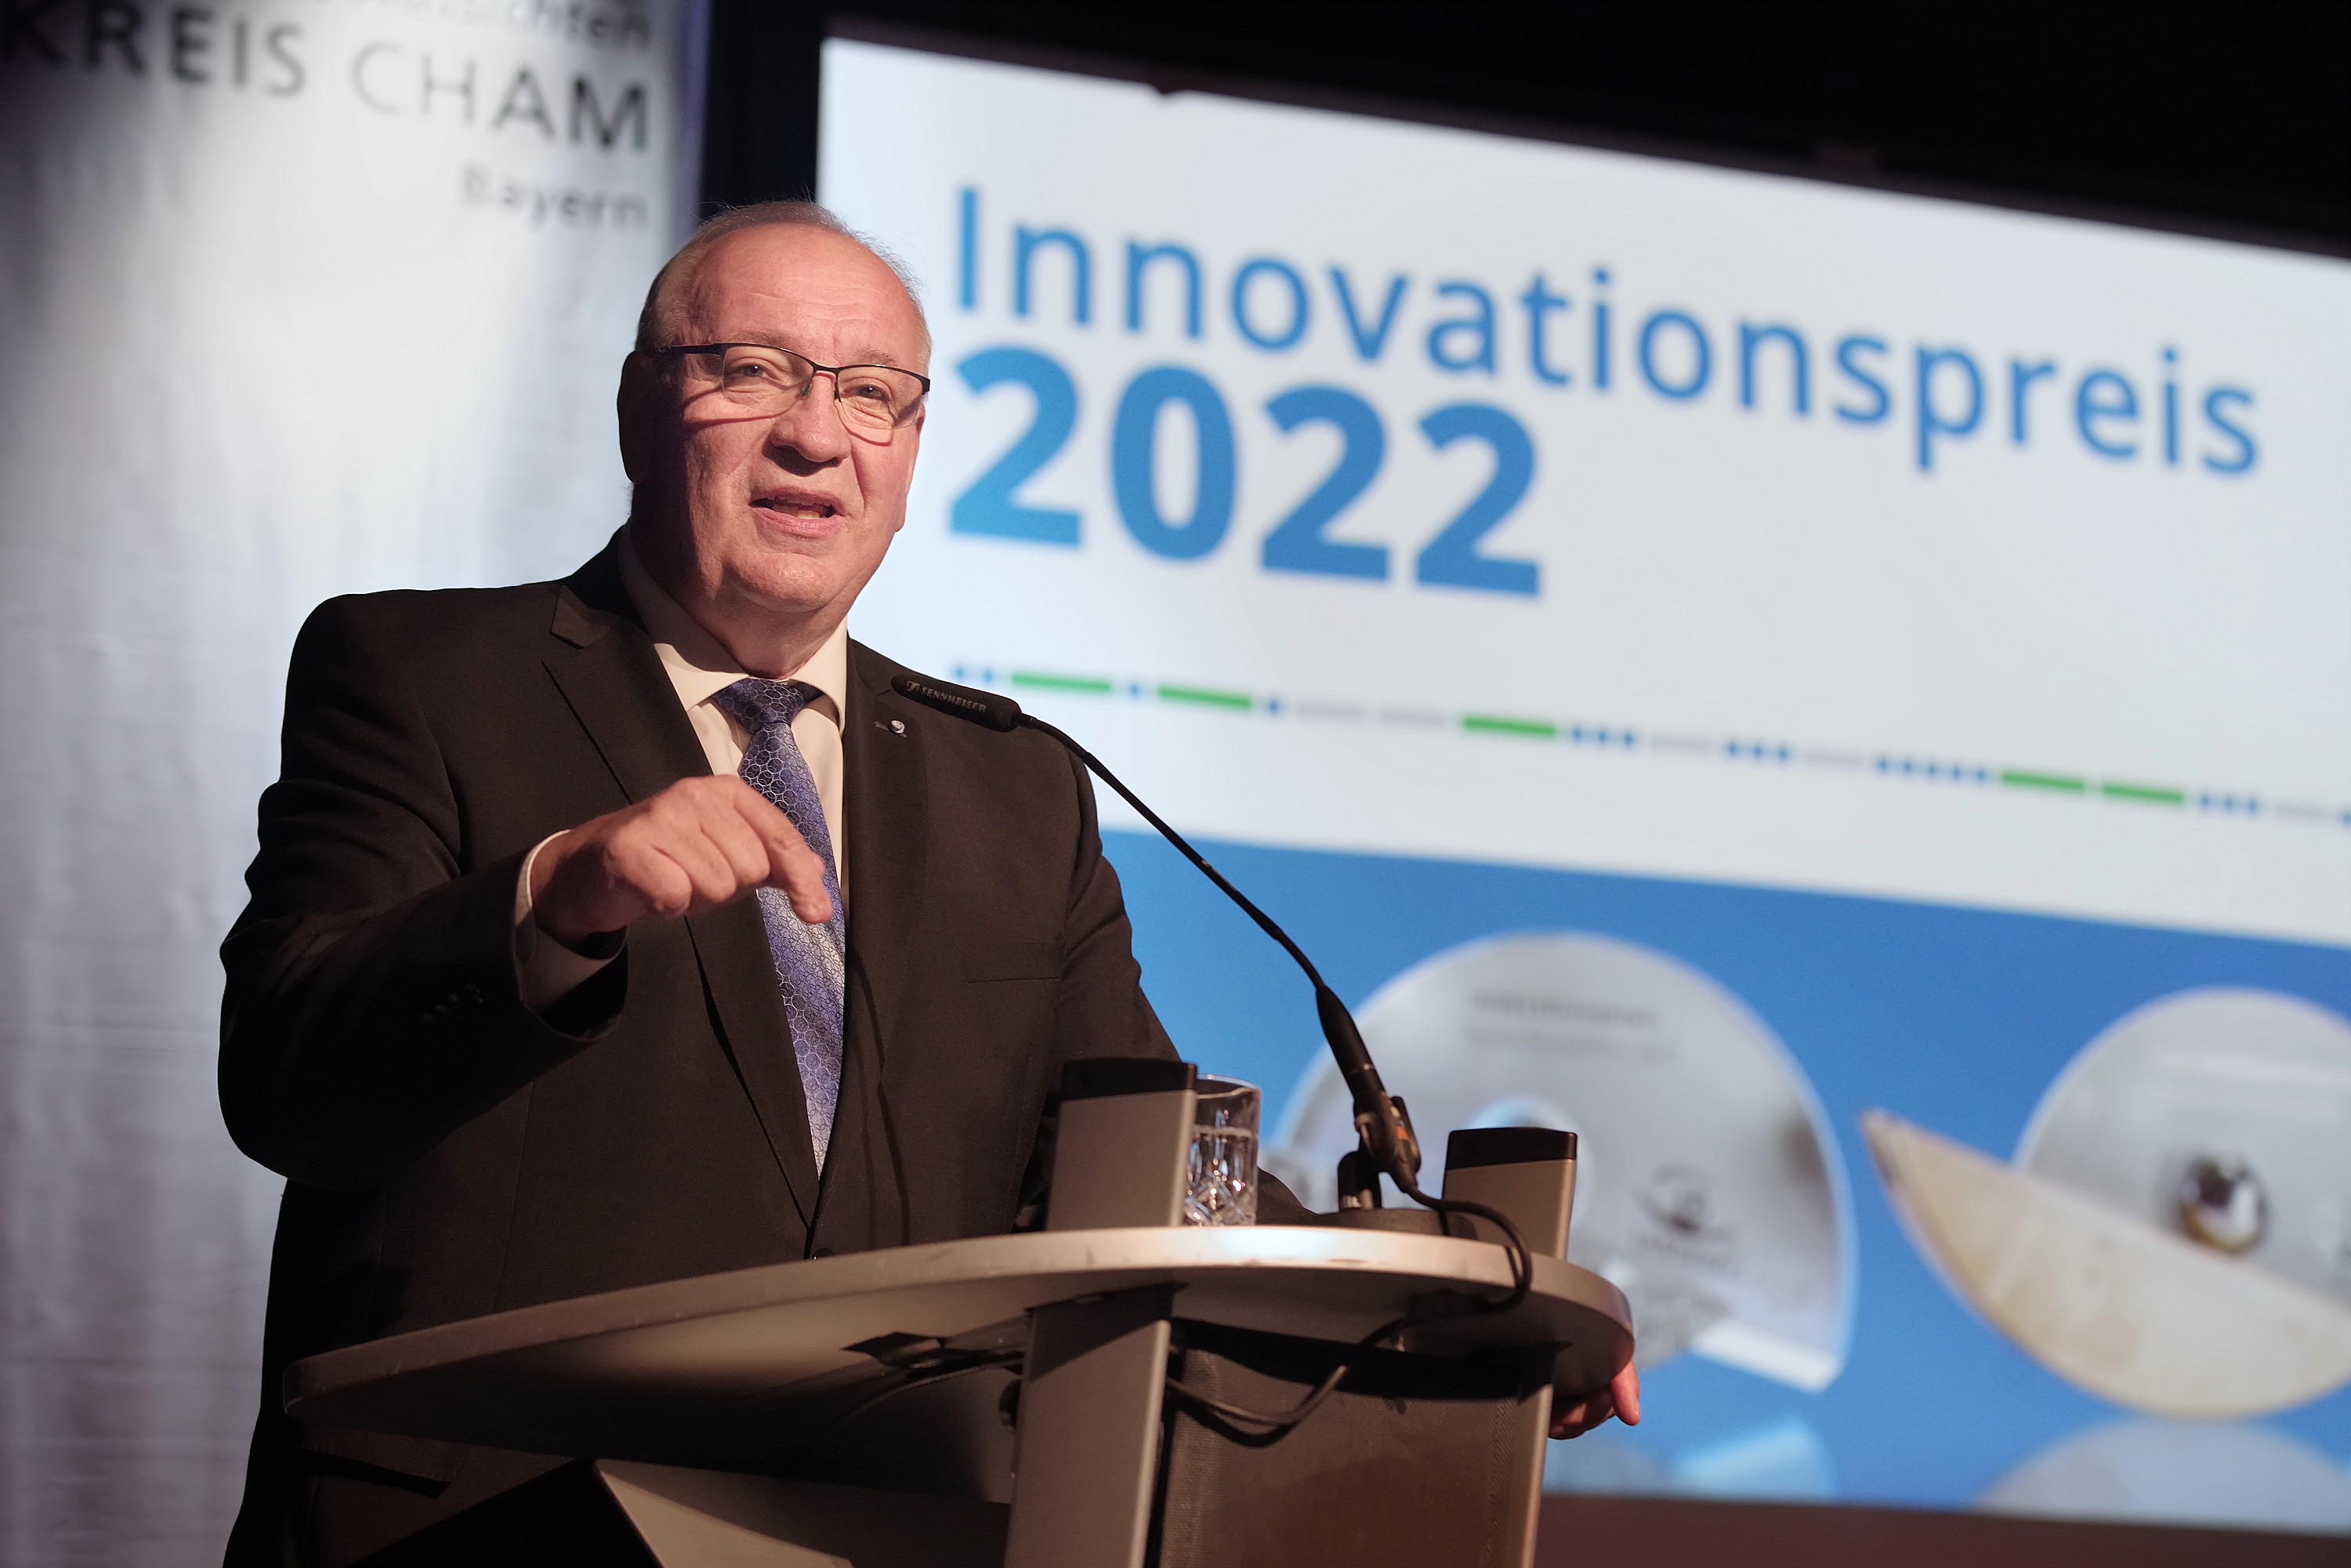 Innovationspreis 2022 (11)